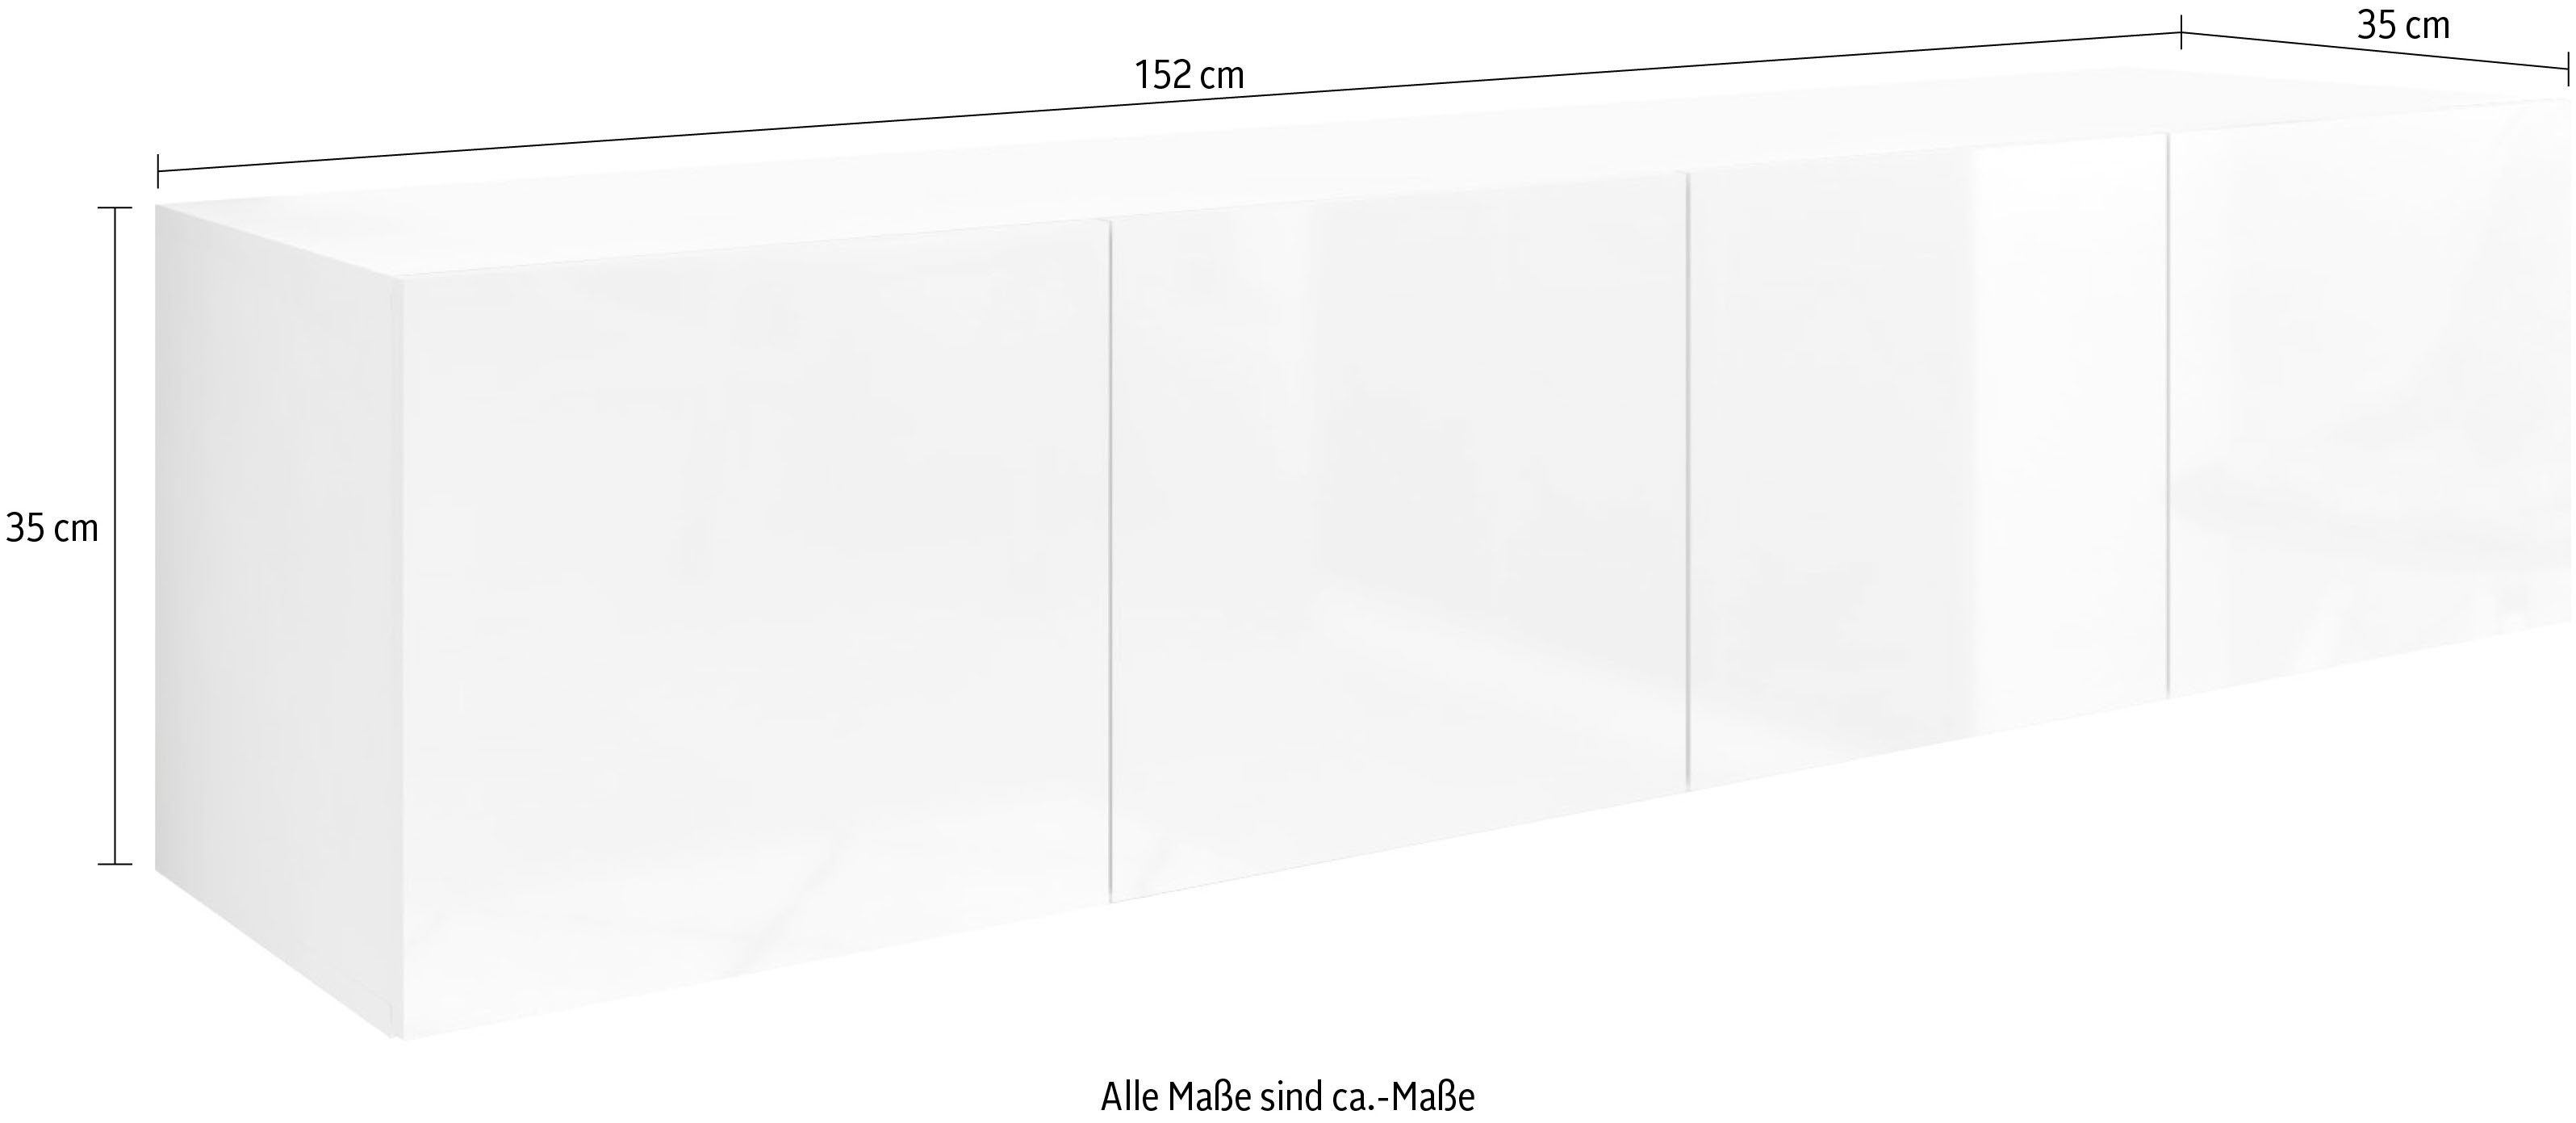 Lowboard Breite matt Möbel hängend 152 cm, nur borchardt Vaasa, weiß